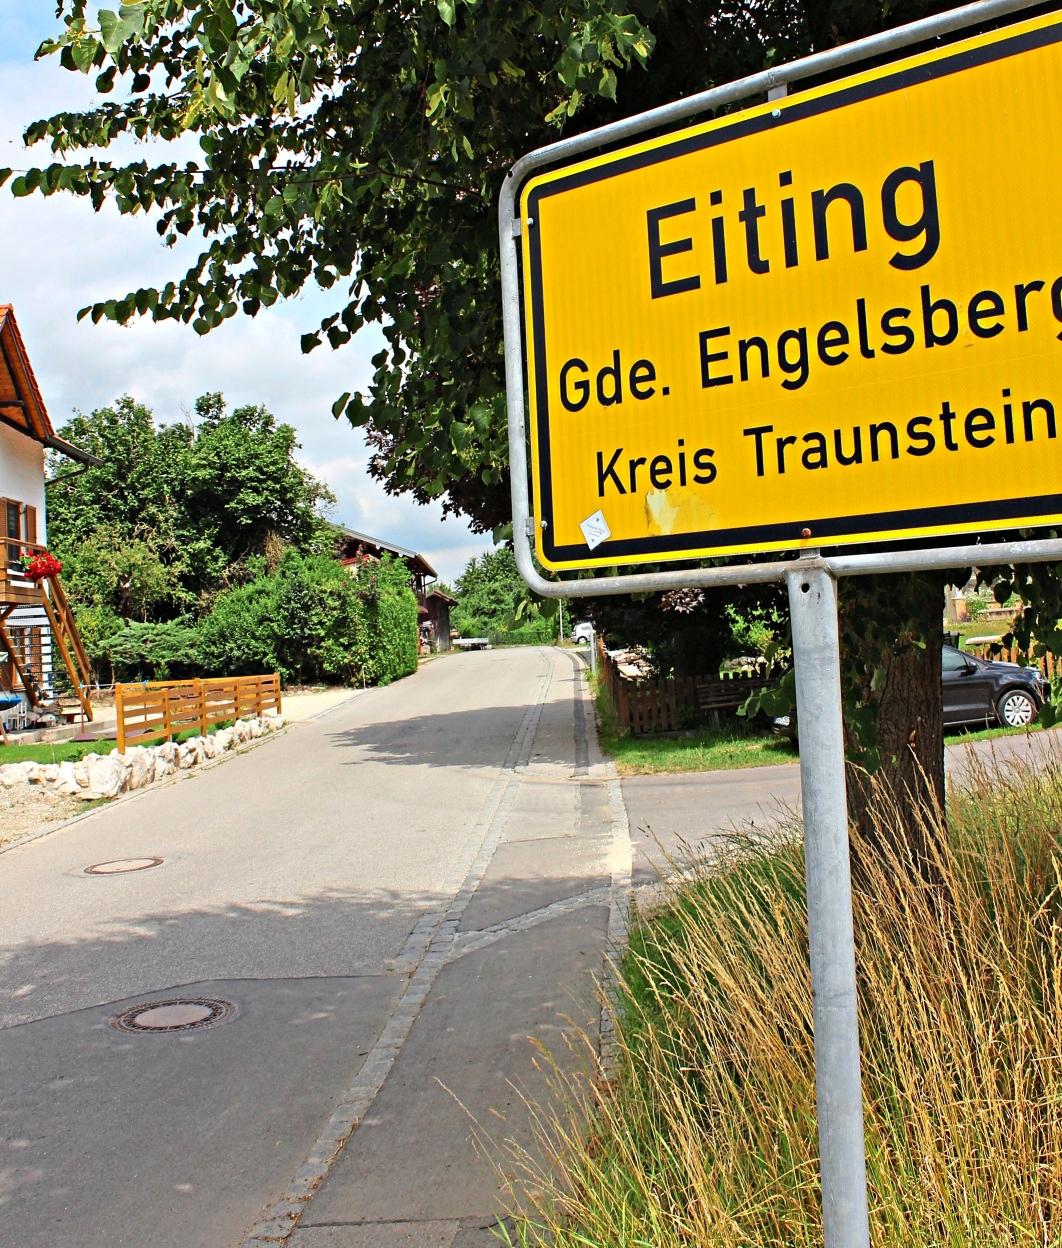 Eiting und Maisenberg waren bis zur Landkreisgebietsreform von 1972 eigenständige Gemeinden im Landkreis Mühldorf. Seit 50 Jahren gehören sie zu Engelsberg und zum Landkreis Traunstein. − Fotos: Traup